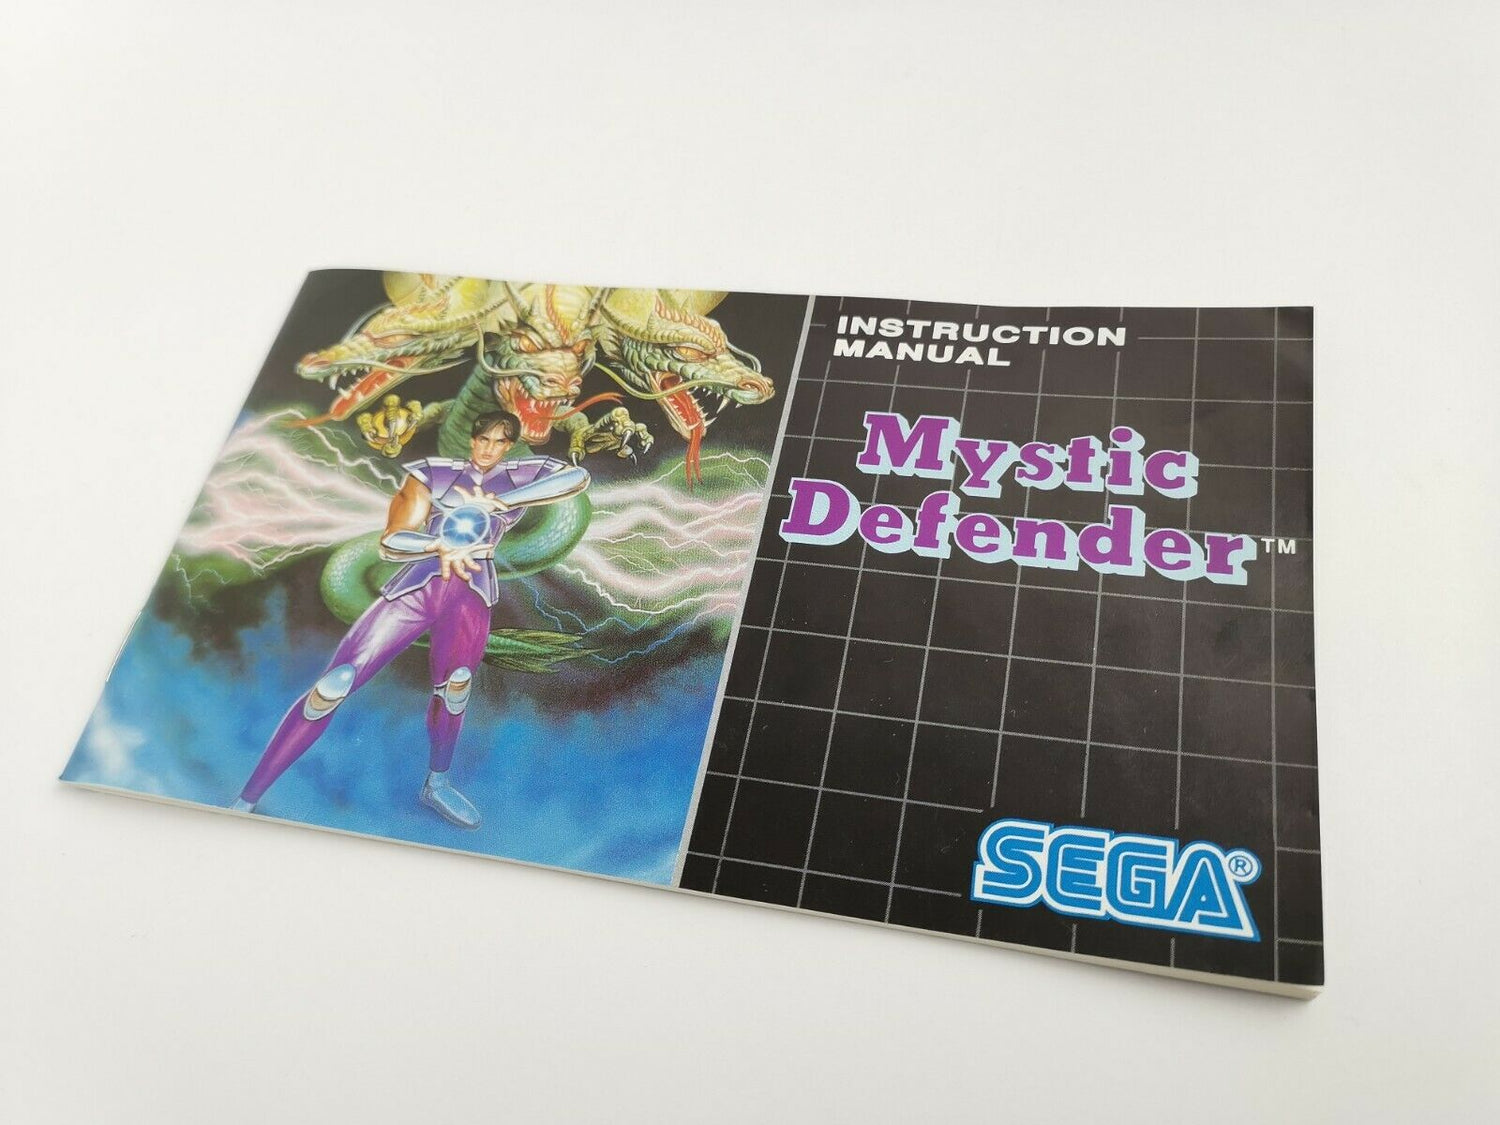 Sega Mega Drive Spiel 